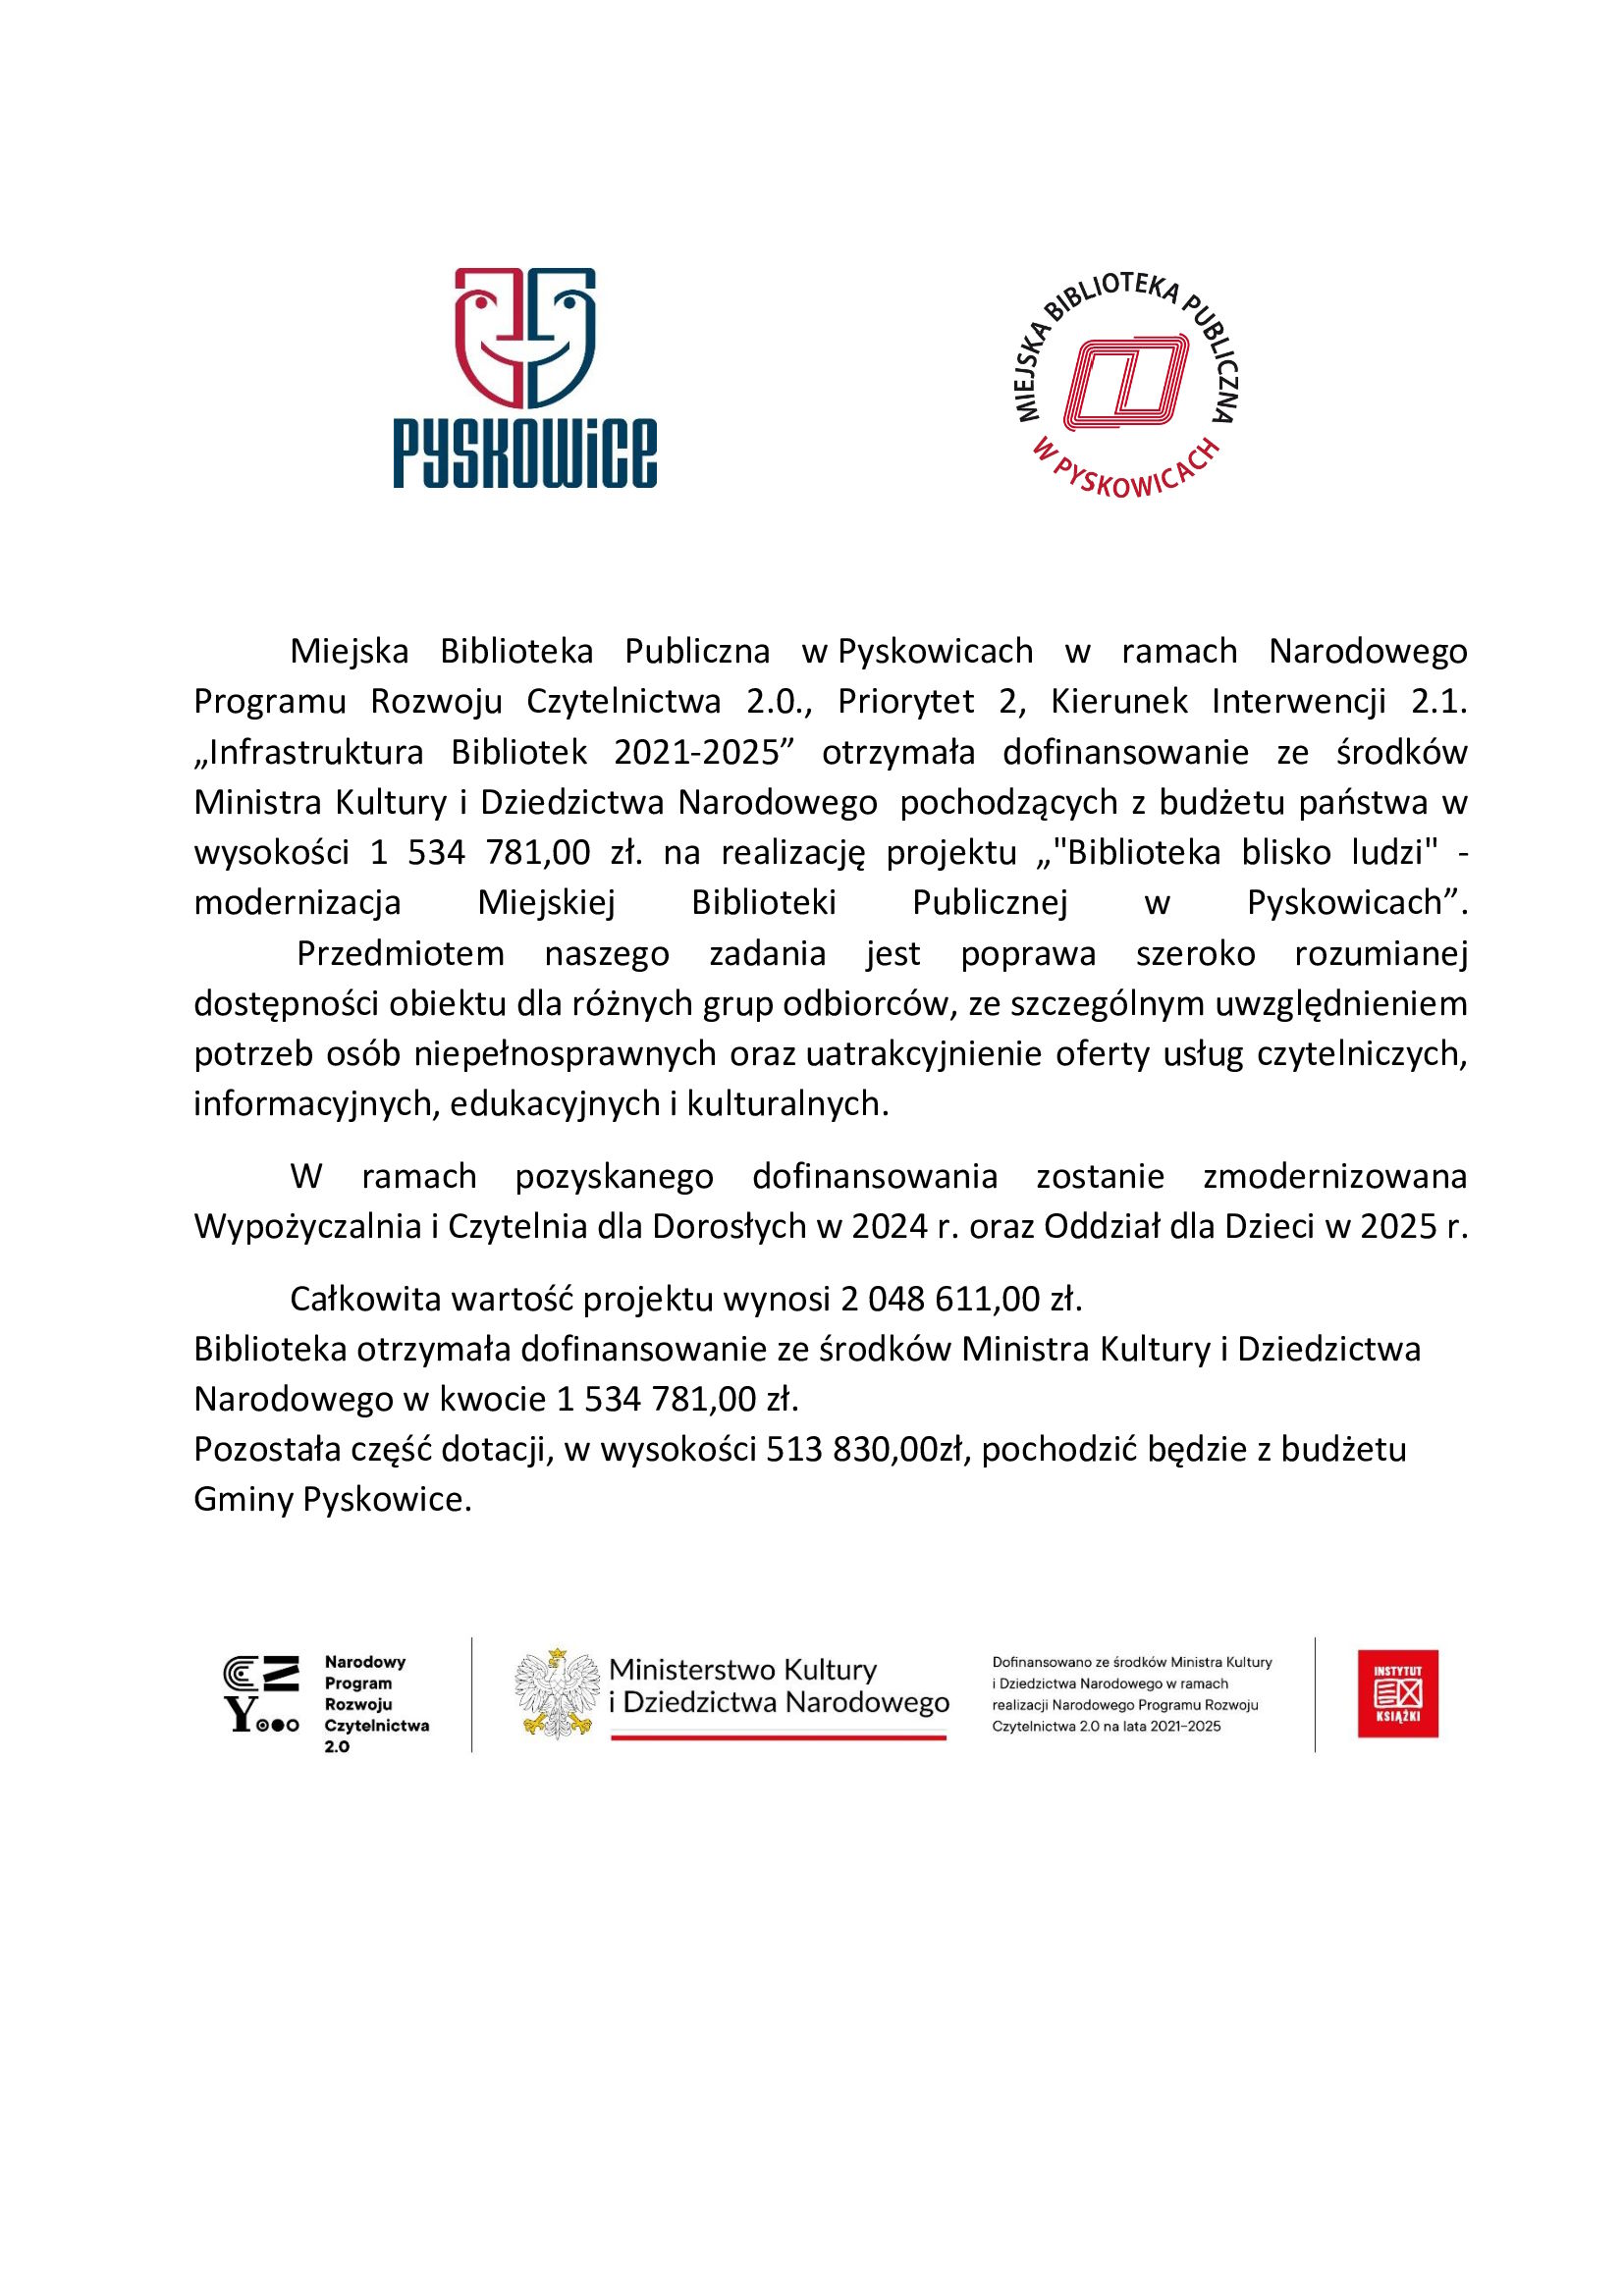 MBP w Pyskowicach otrzymała w ramach Narodowego Programu Rozwoju Czytelnictwa 2.0 dofinansowanie